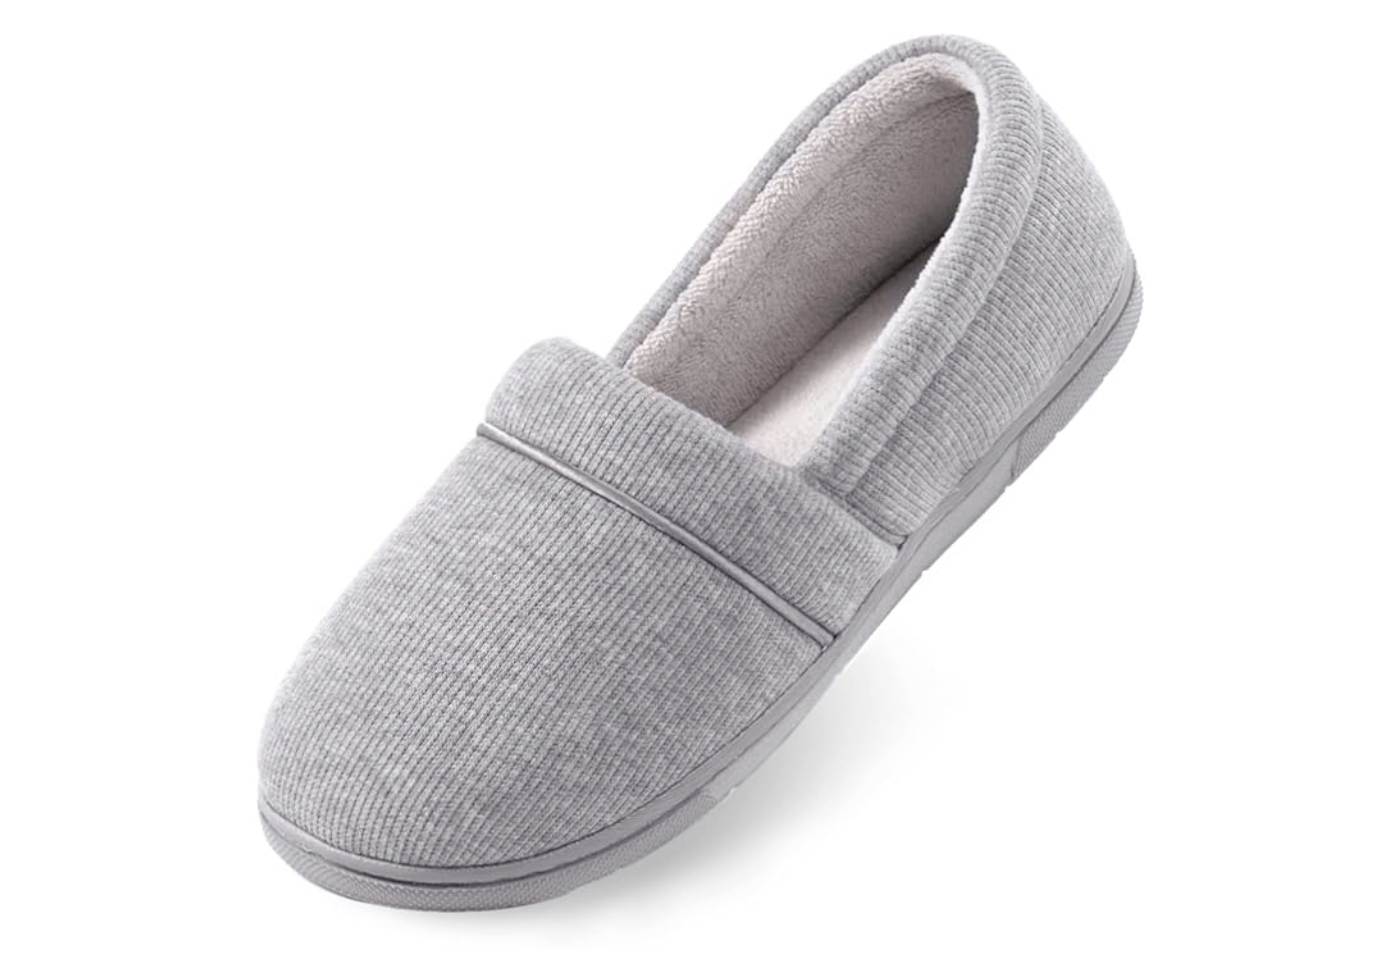 Get Set Globe Top 10 Best Comfy Slippers Like Shoes - ULTRAIDEAS Women's Cozy Memory Foam Knit Slippers